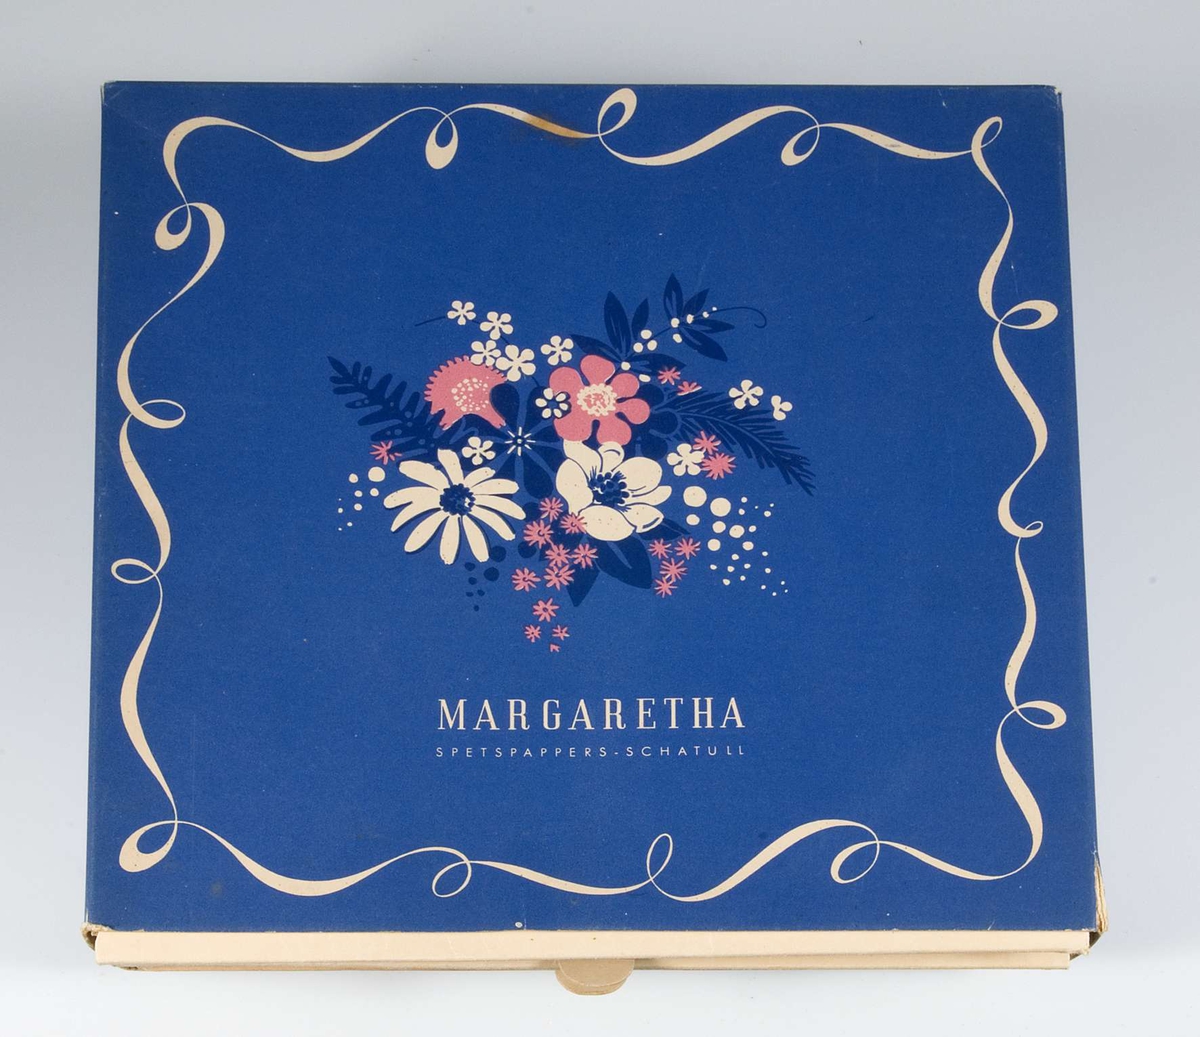 Förpackning i blå papp med vit bård och blommotiv. Text: "Margaretha. Spetspappers-schatull". Innehåller tårtpapper i tre olika storlekar.